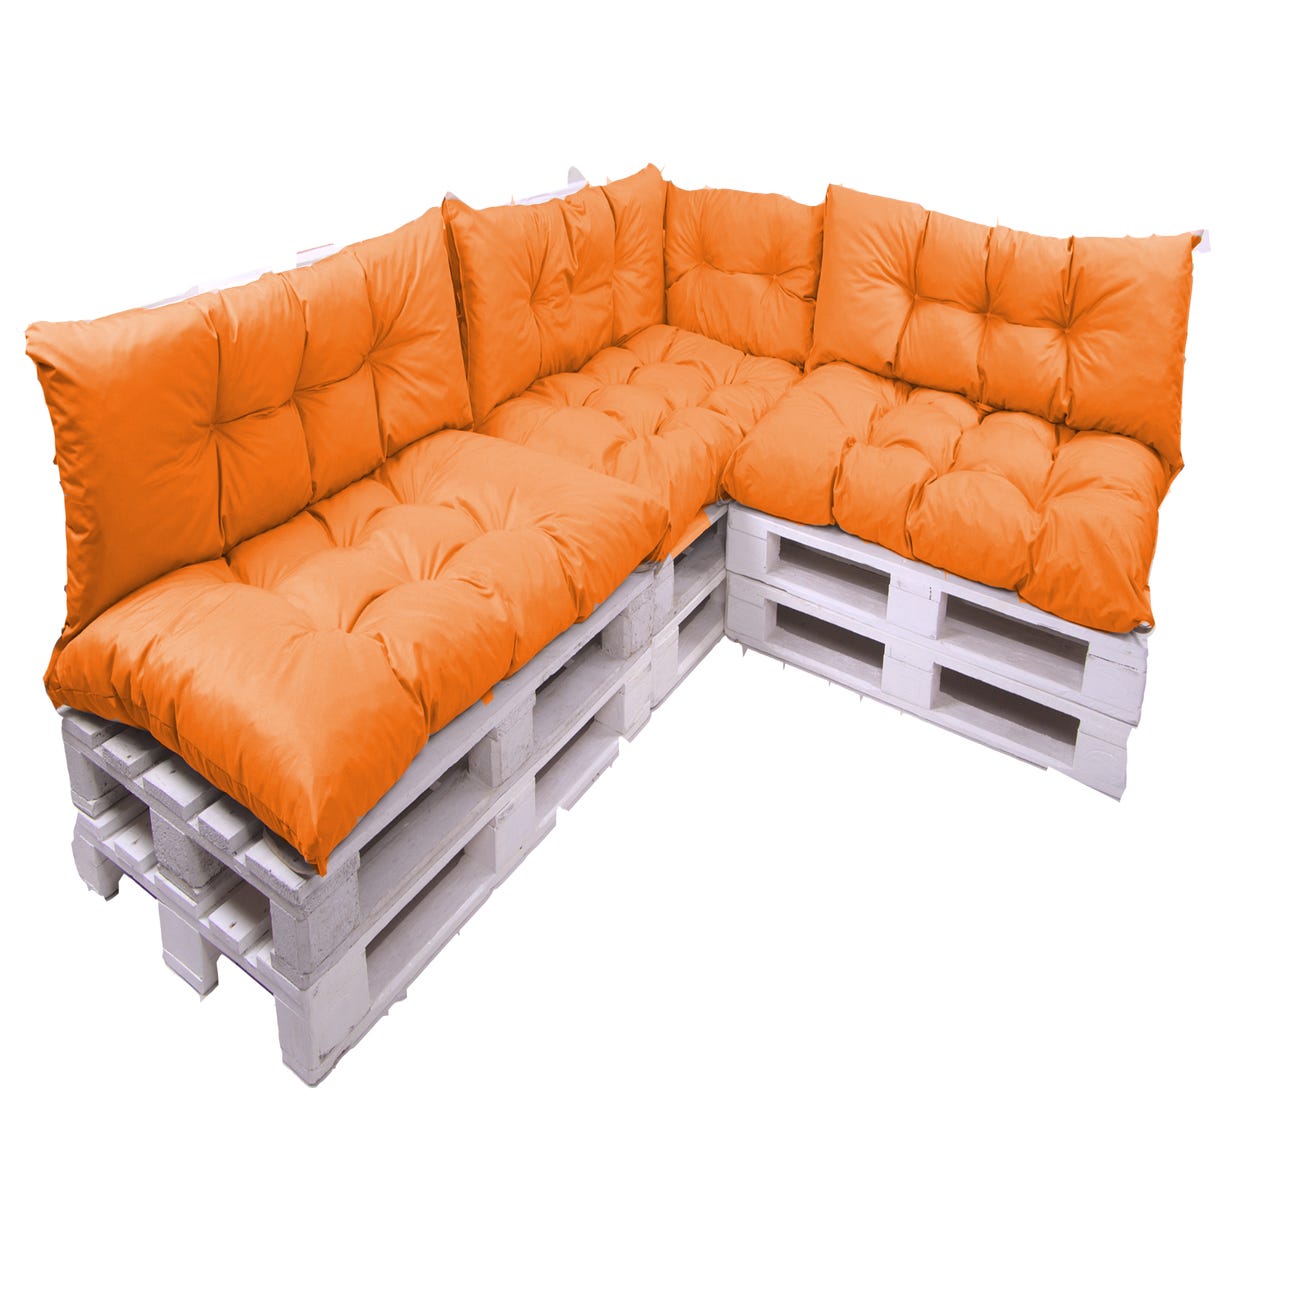 Pack Cojín de Espuma para sofá Exterior de Palet con Funda